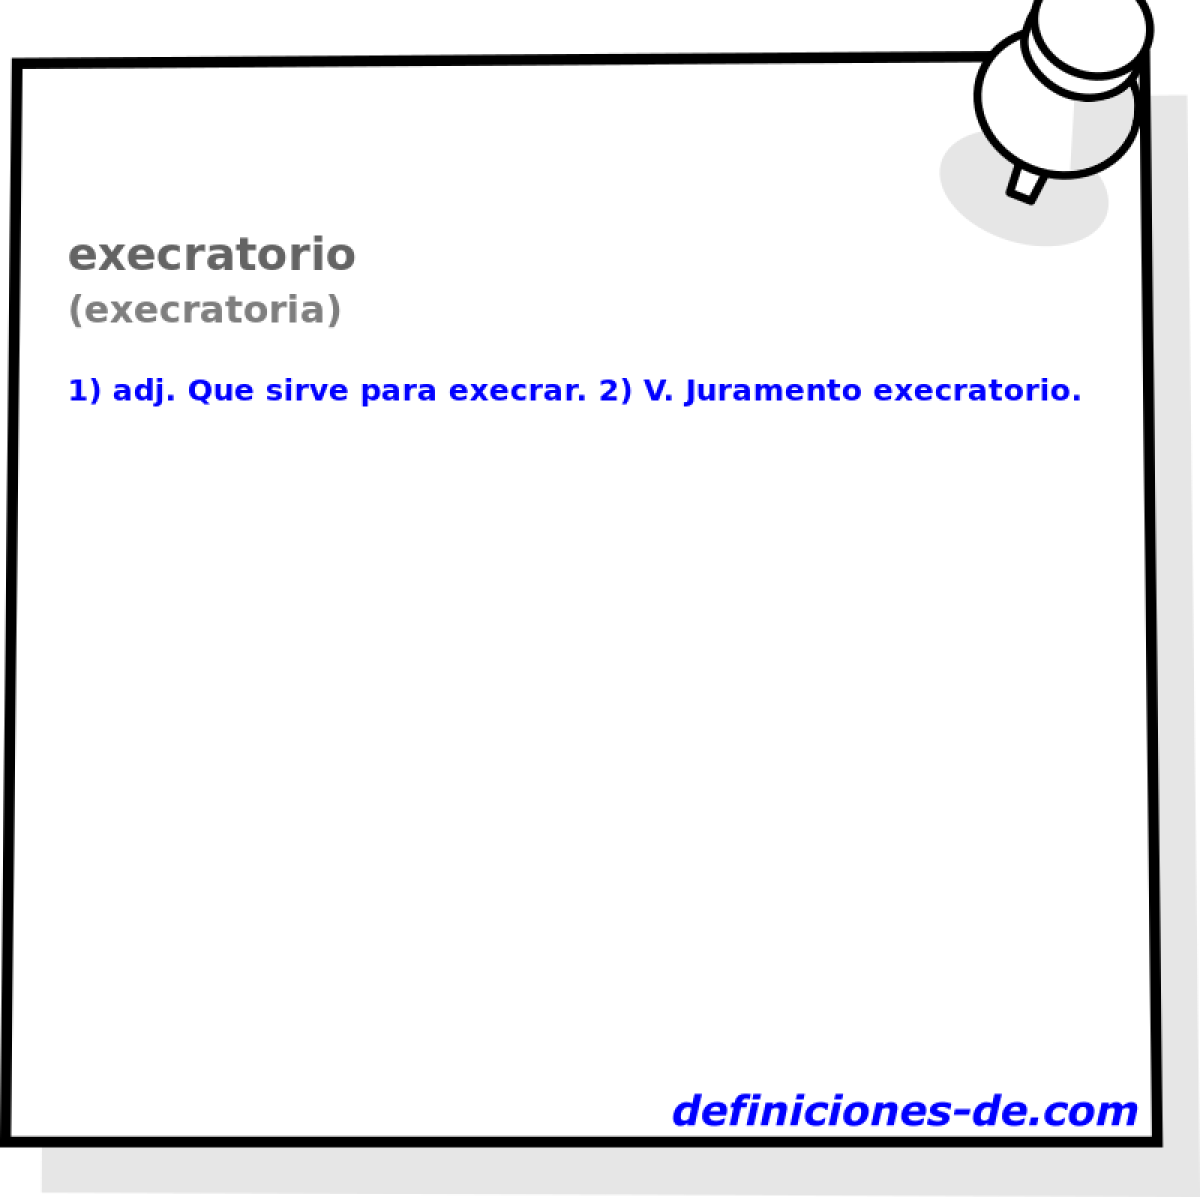 execratorio (execratoria)